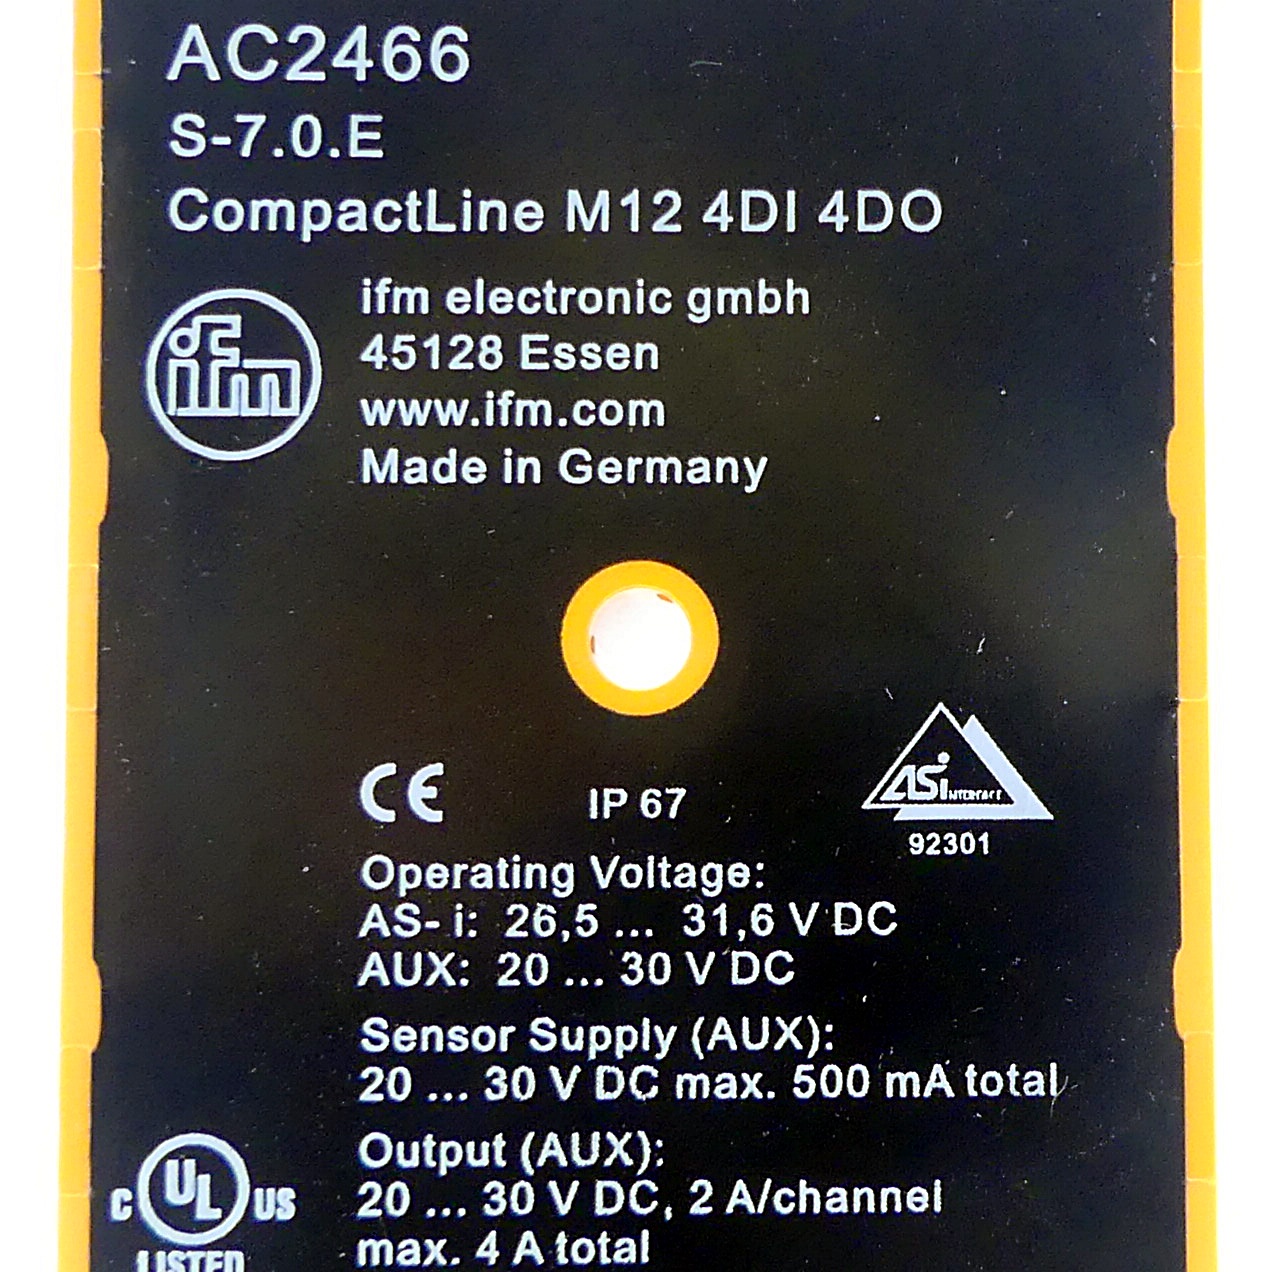 CompactLine-Module AC2466 